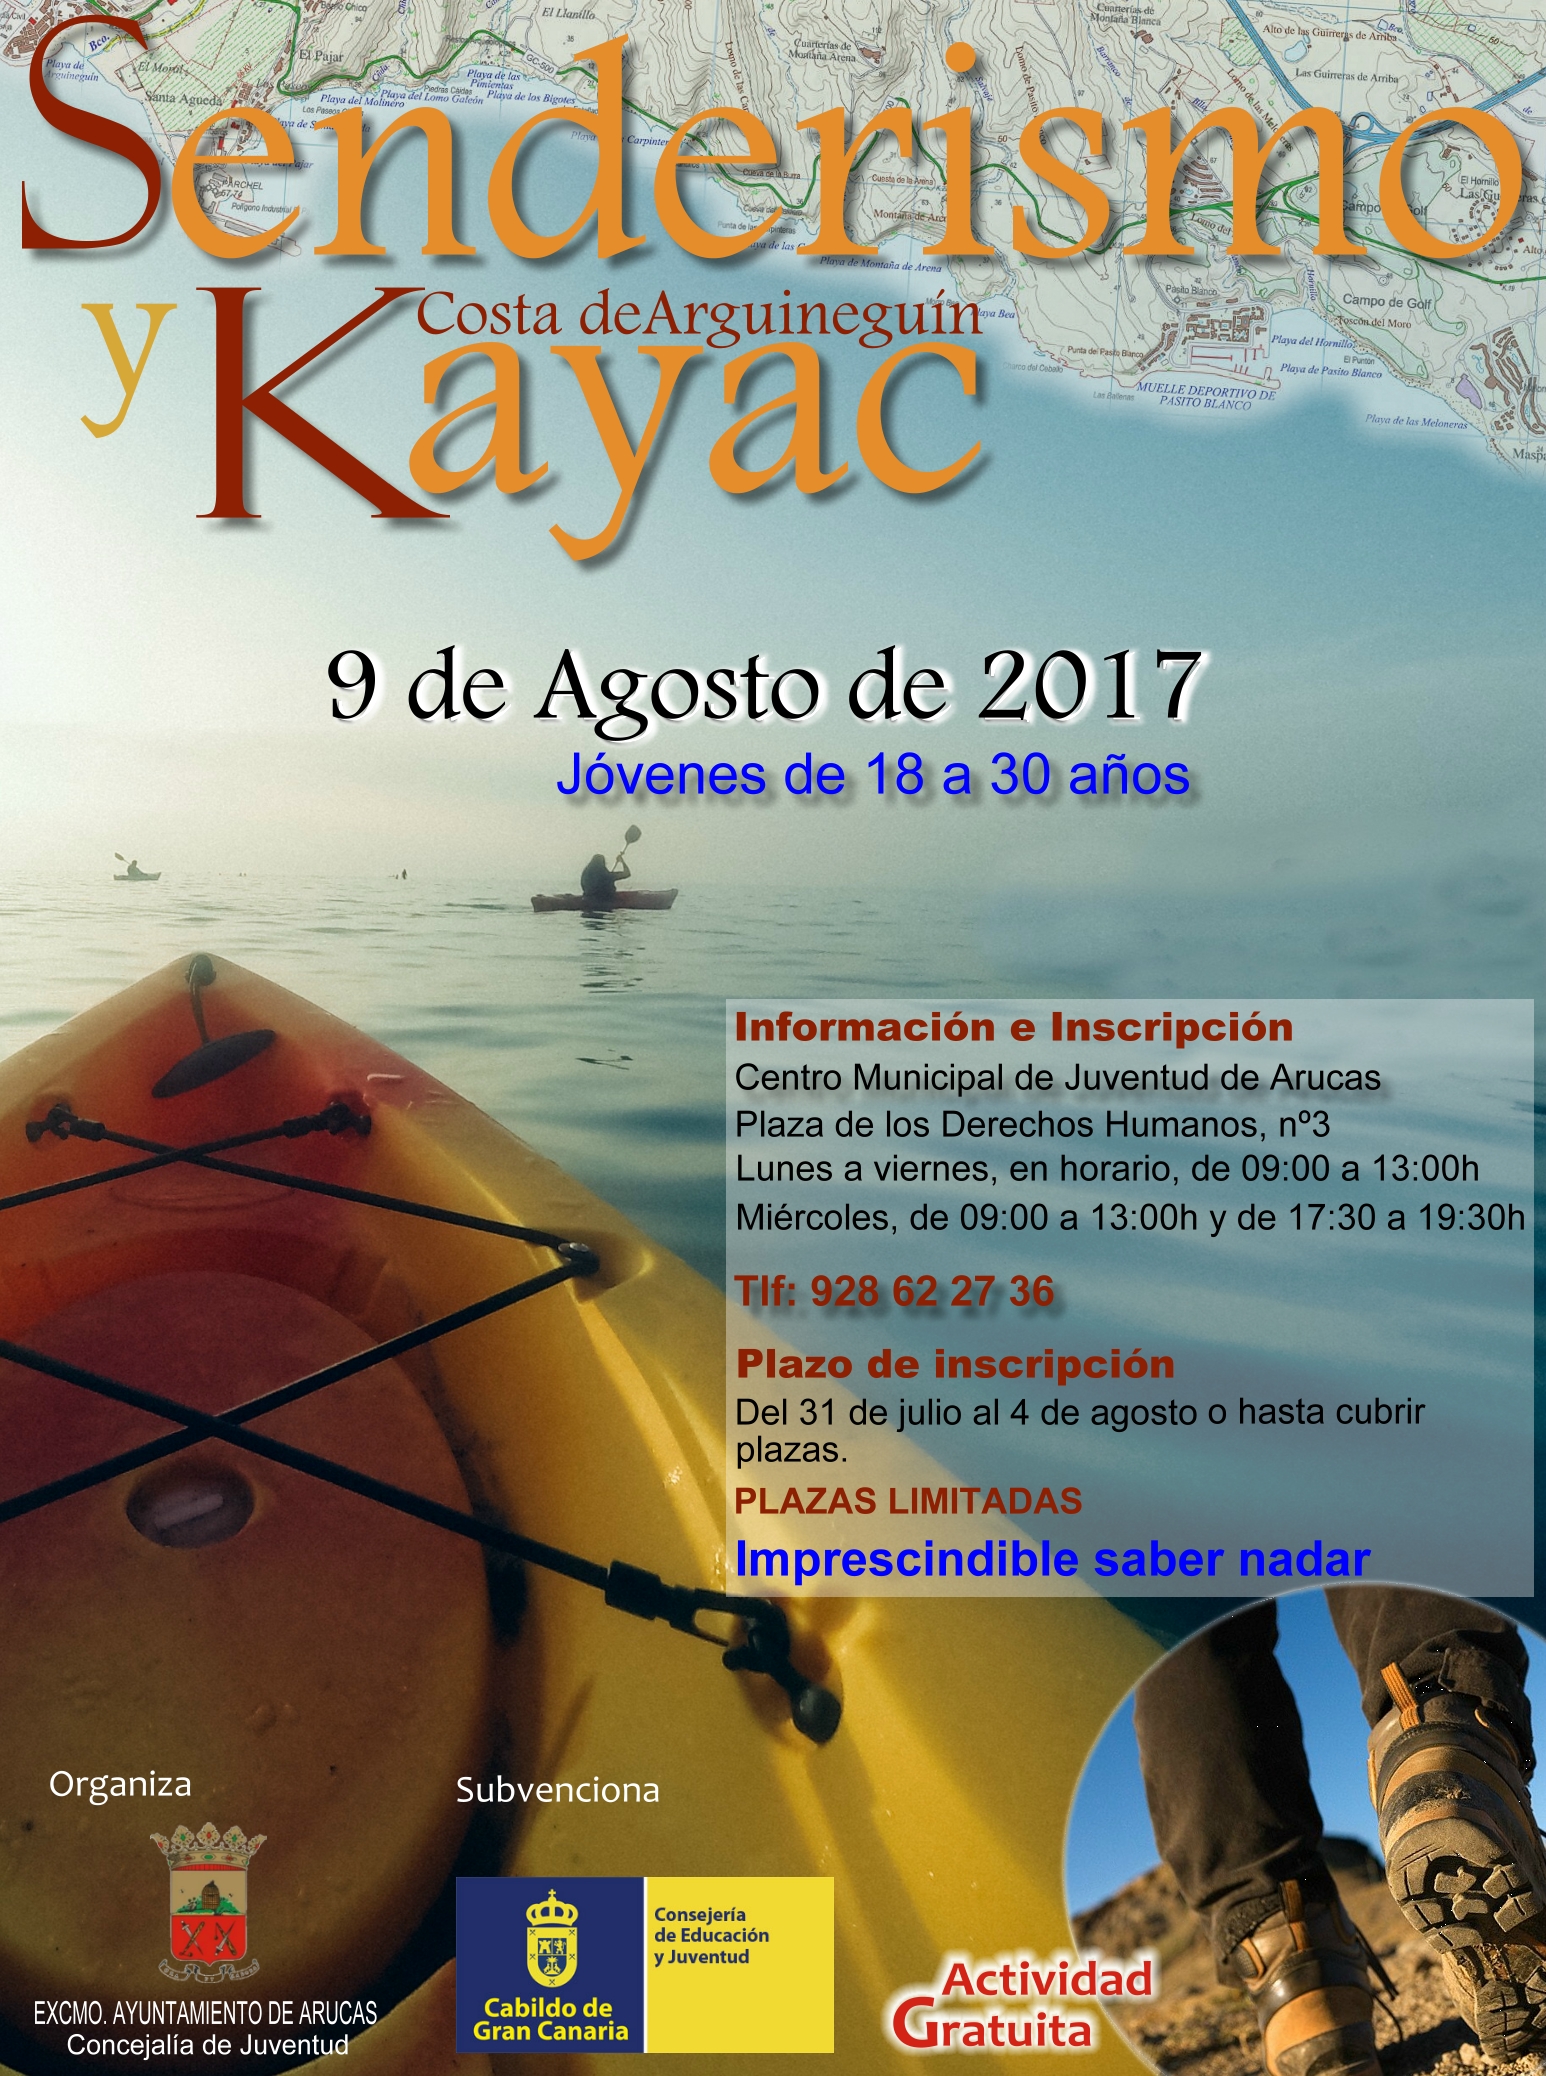 Cartel de senderismo y kayac en Arguineguín